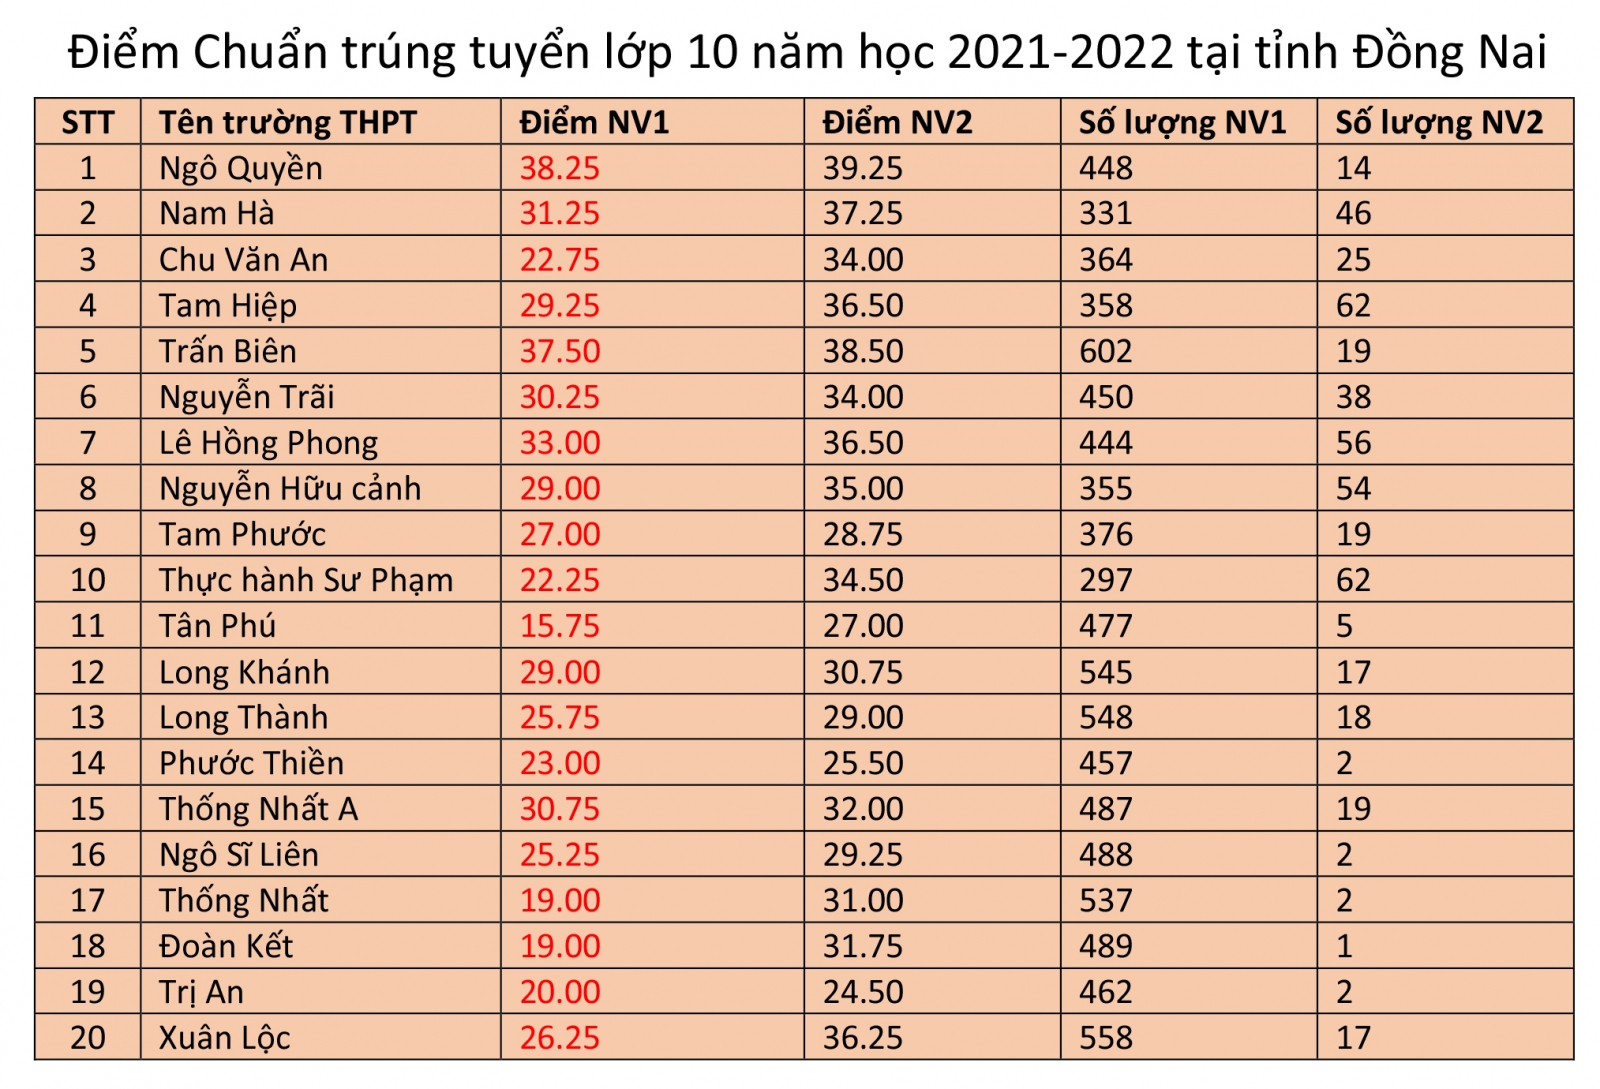 Đồng Nai công bố điểm trúng tuyển lớp 10 năm học 2021-2022 - Ảnh minh hoạ 2